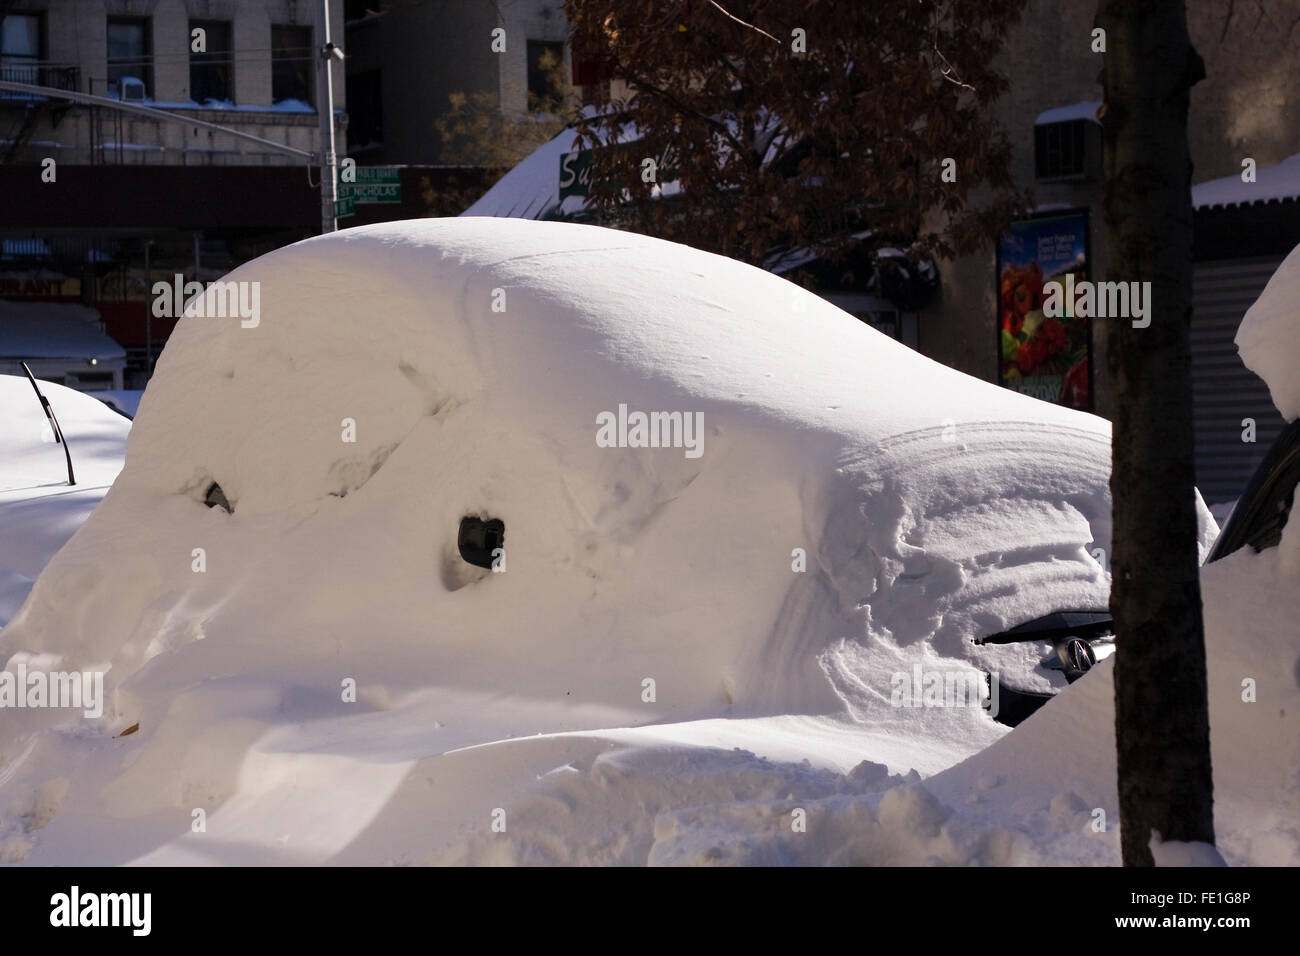 Eine schneebedeckte Fahrzeug noch auf einer Stadtstraße ausgegraben werden, nachdem ein Übernachtung Schneesturm Blizzard Bedingungen es begraben Stockfoto